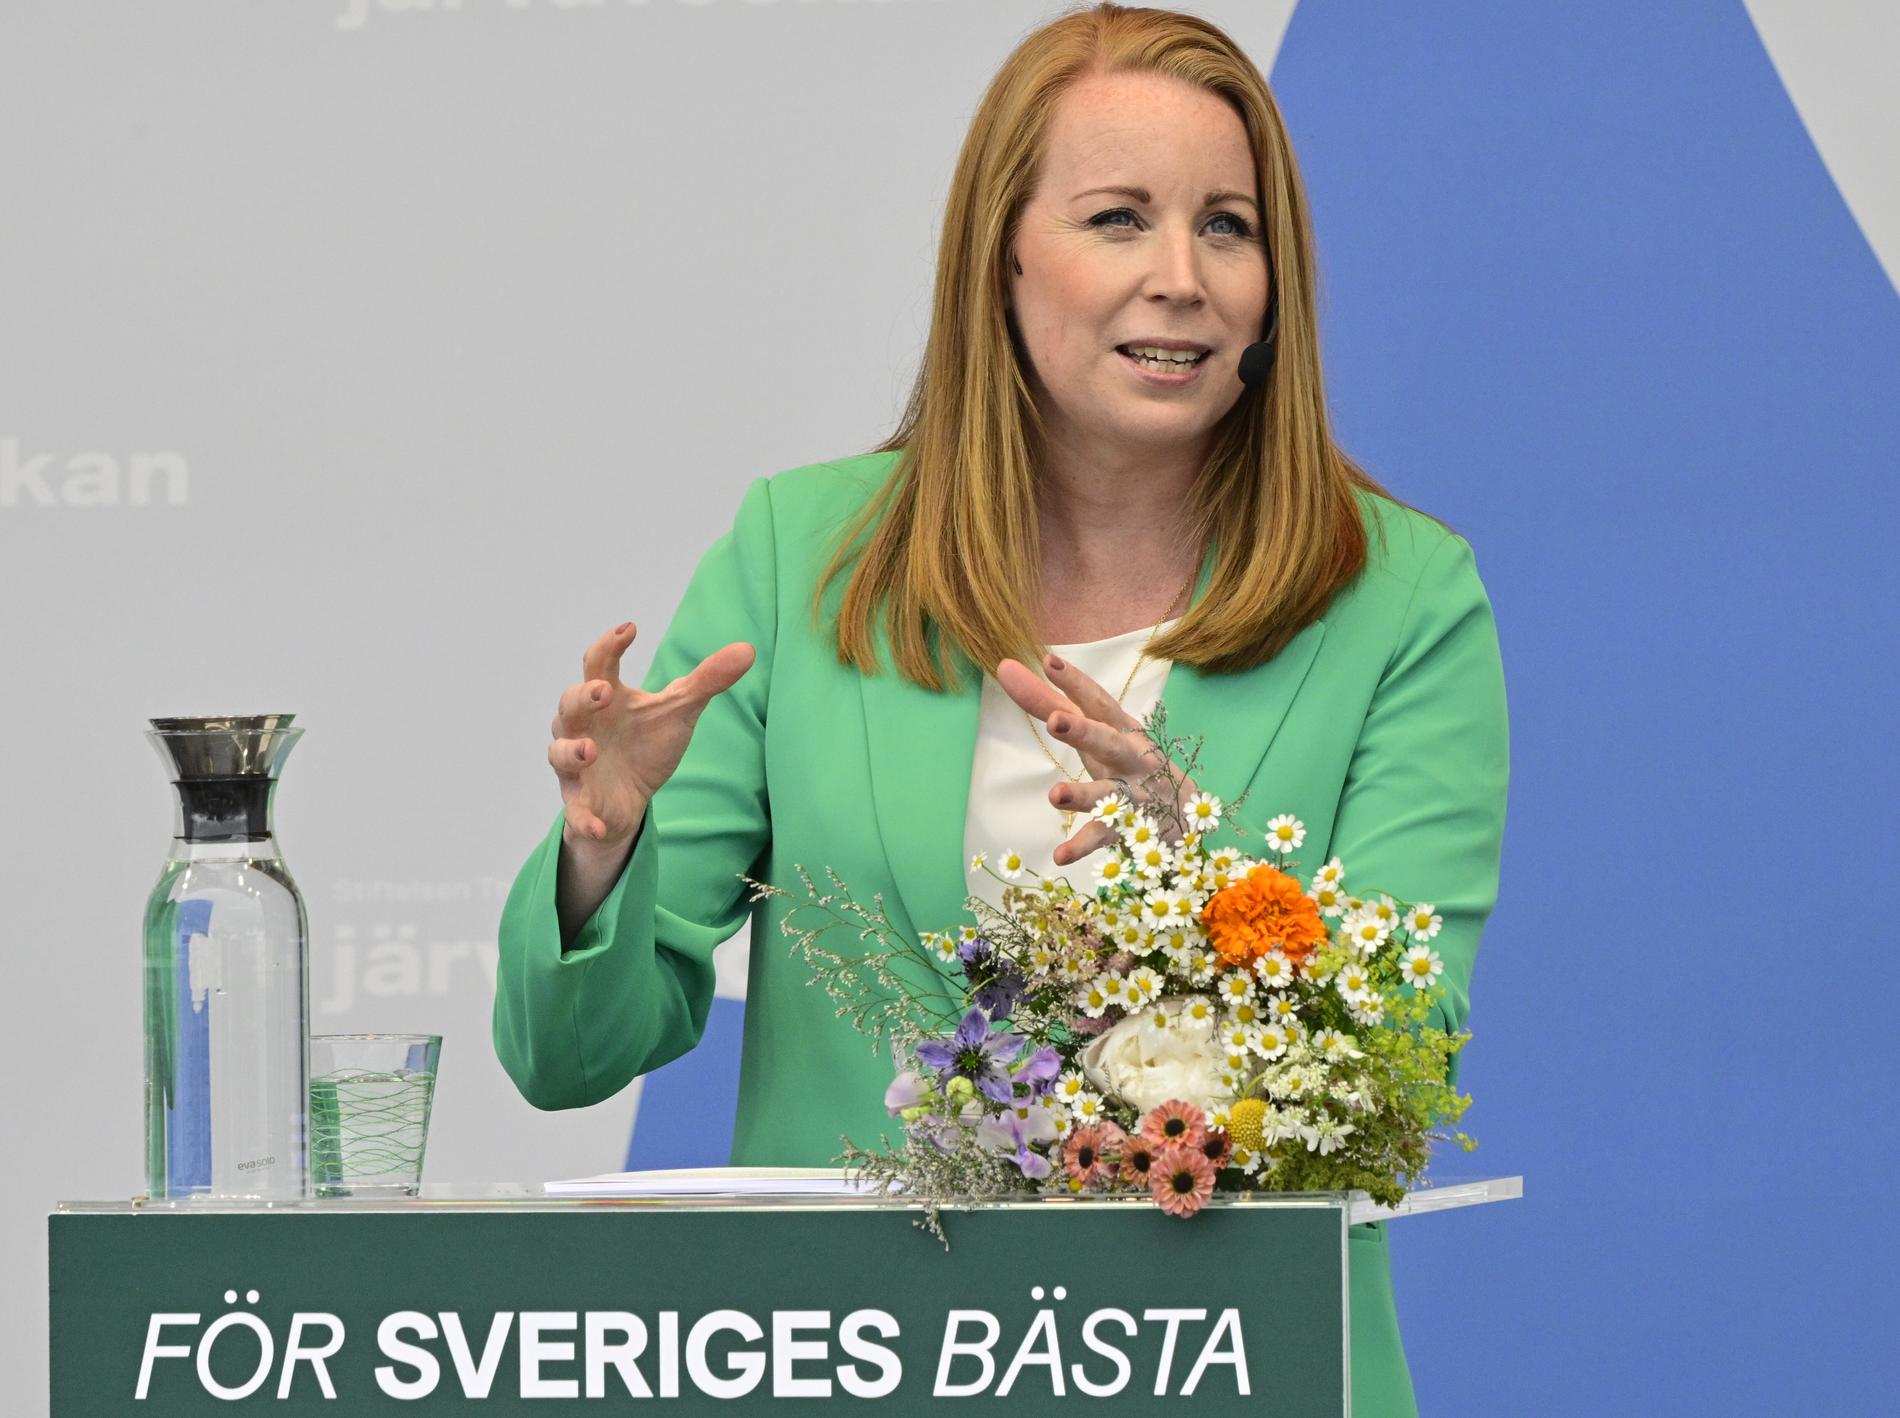 Centerpartiets partiledare Annie Lööf talar under Järvaveckan.